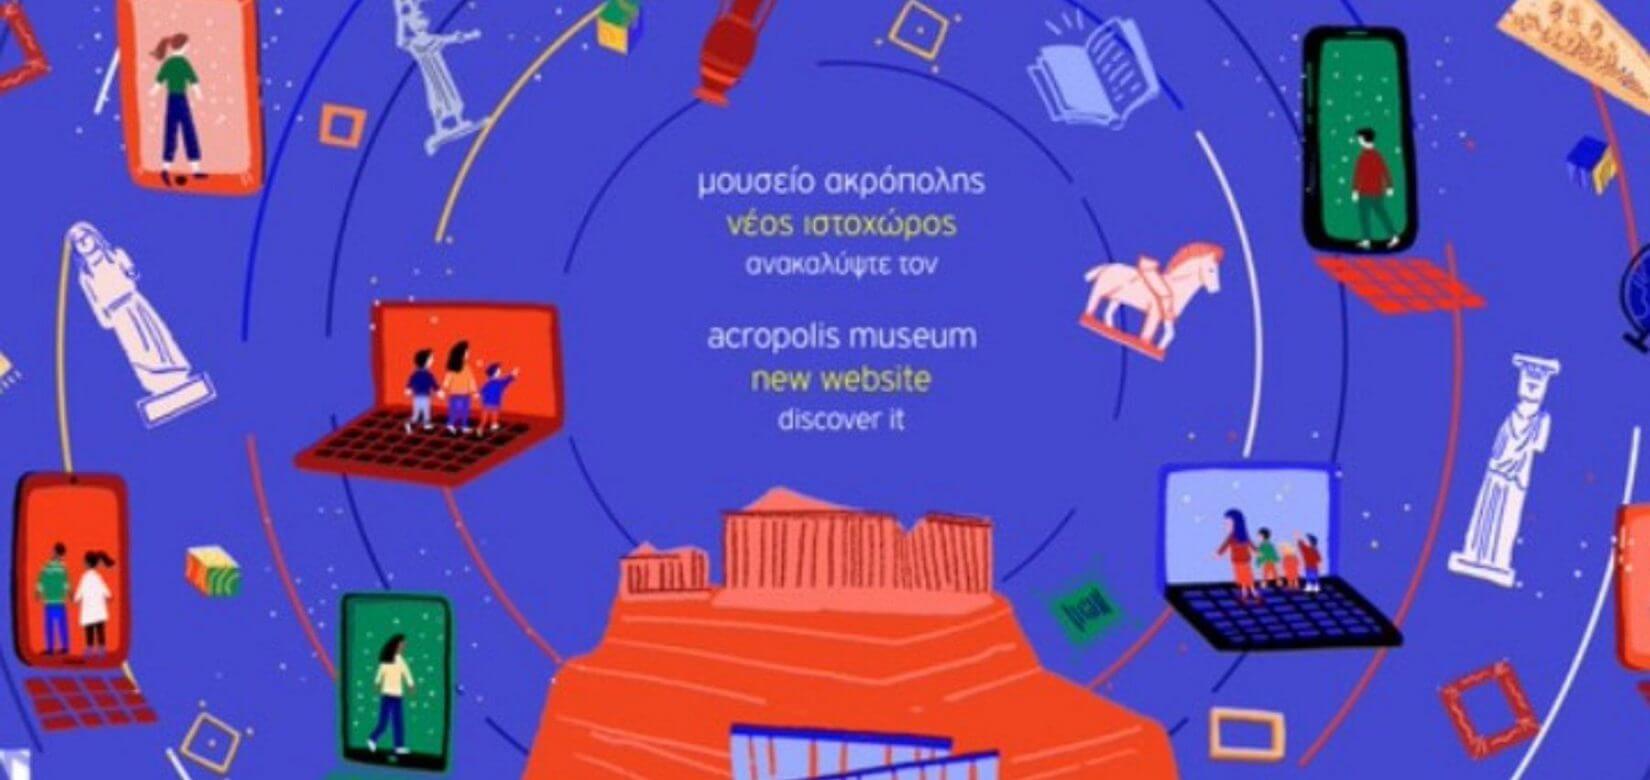 Ψηφιακό Μουσείο Ακρόπολης: ένας νέος κόσμος για μικρούς και μεγάλους